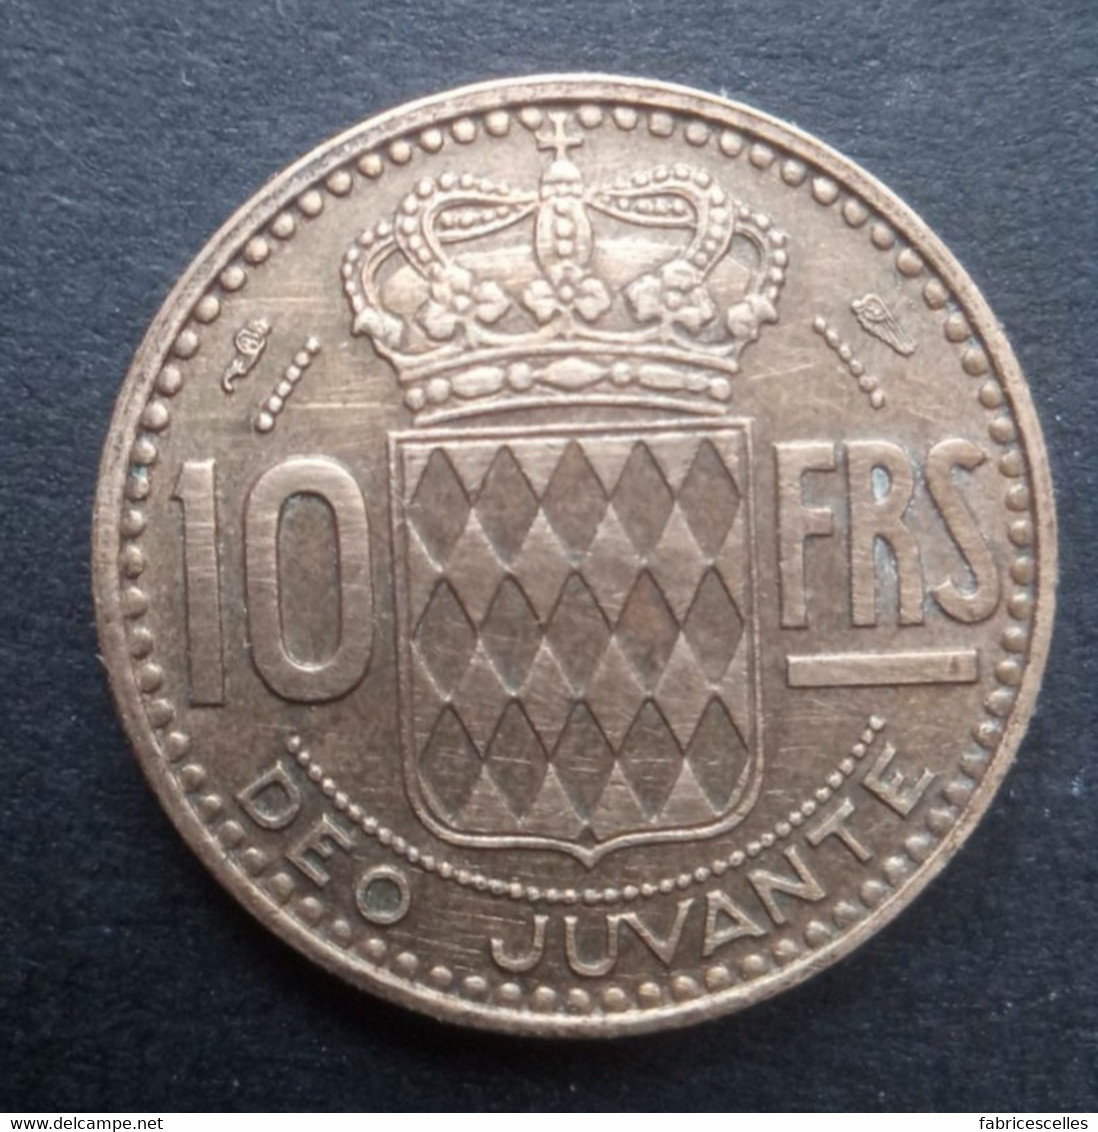 Monaco - Pièce De 10 Francs 1951 - 1949-1956 Francos Antiguos